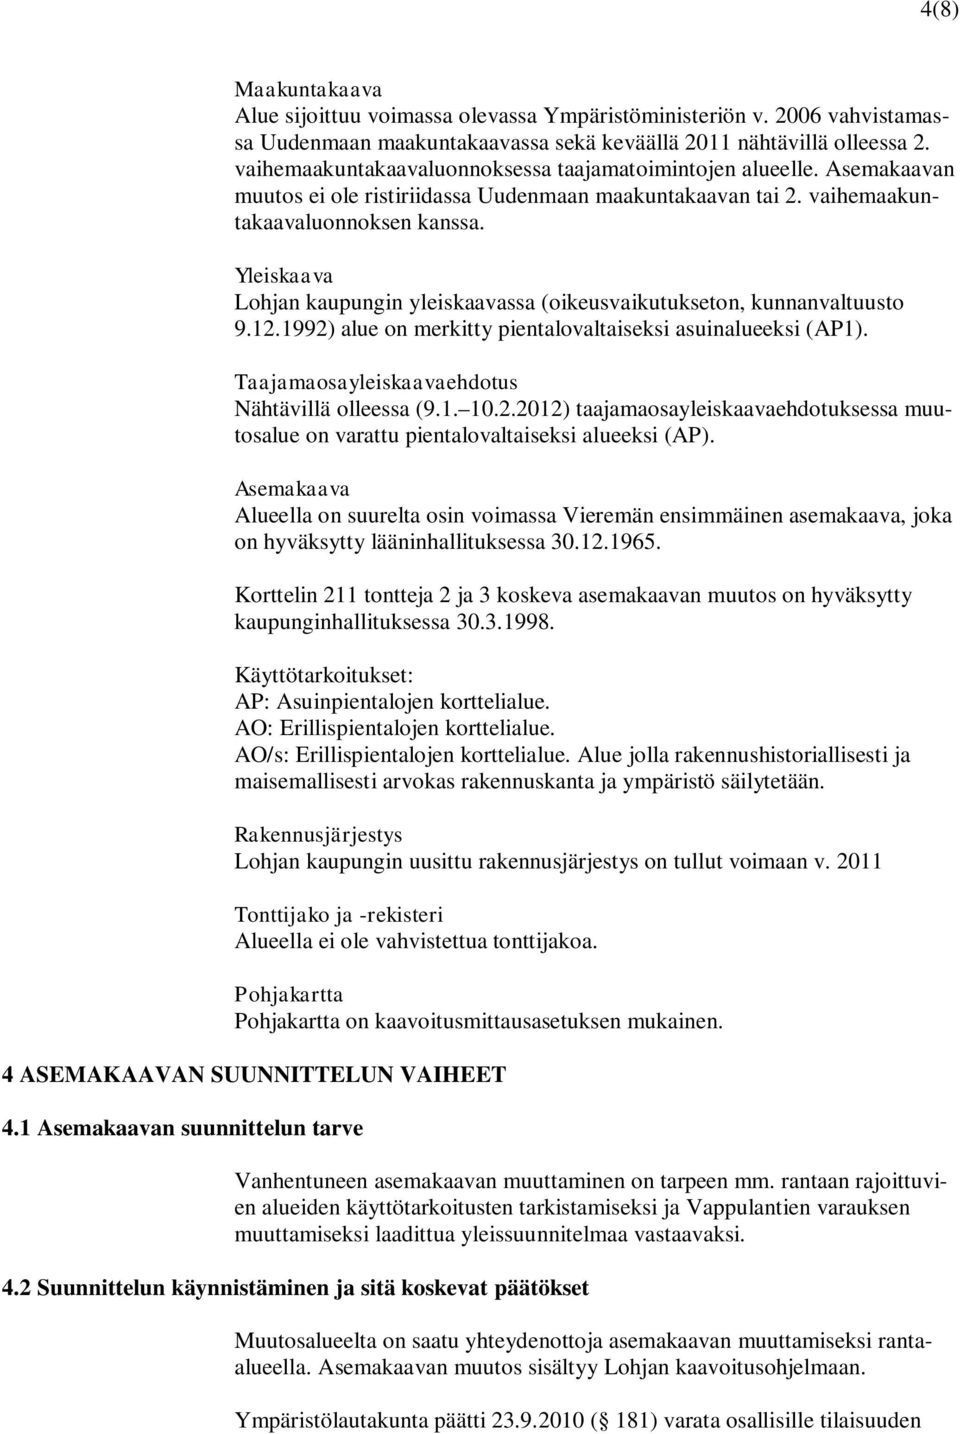 Yleiskaava Lohjan kaupungin yleiskaavassa (oikeusvaikutukseton, kunnanvaltuusto 9.12.1992) alue on merkitty pientalovaltaiseksi asuinalueeksi (AP1). Taajamaosayleiskaavaehdotus Nähtävillä olleessa (9.